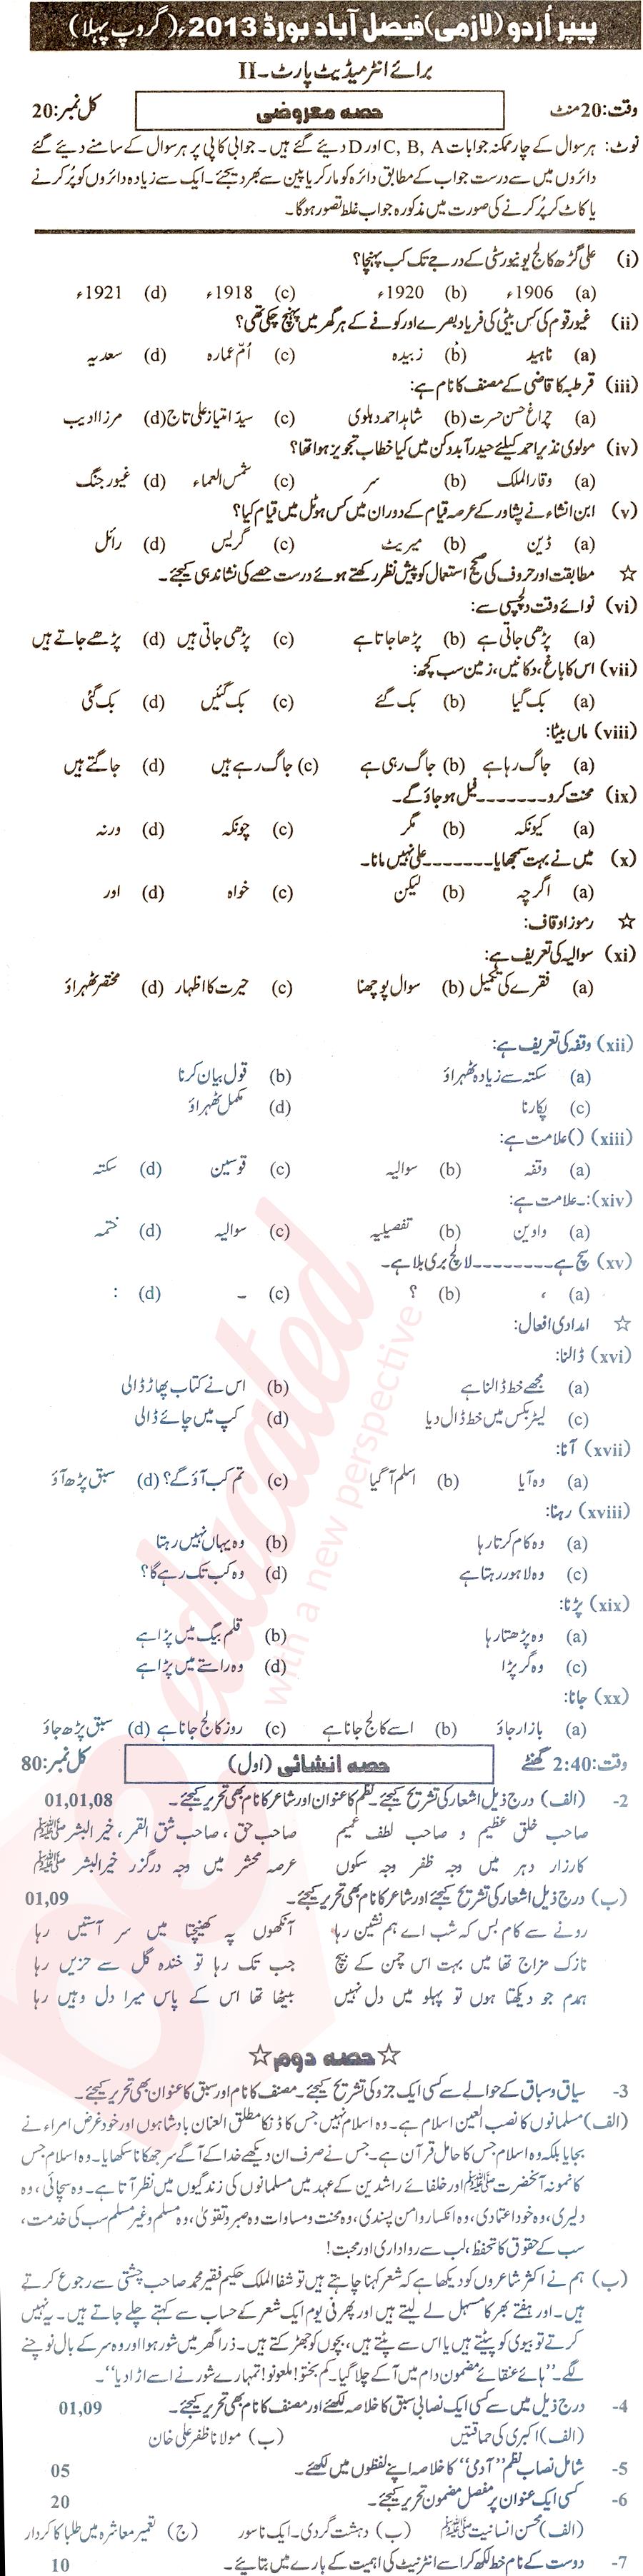 Urdu 12th class Past Paper Group 1 BISE Faisalabad 2013